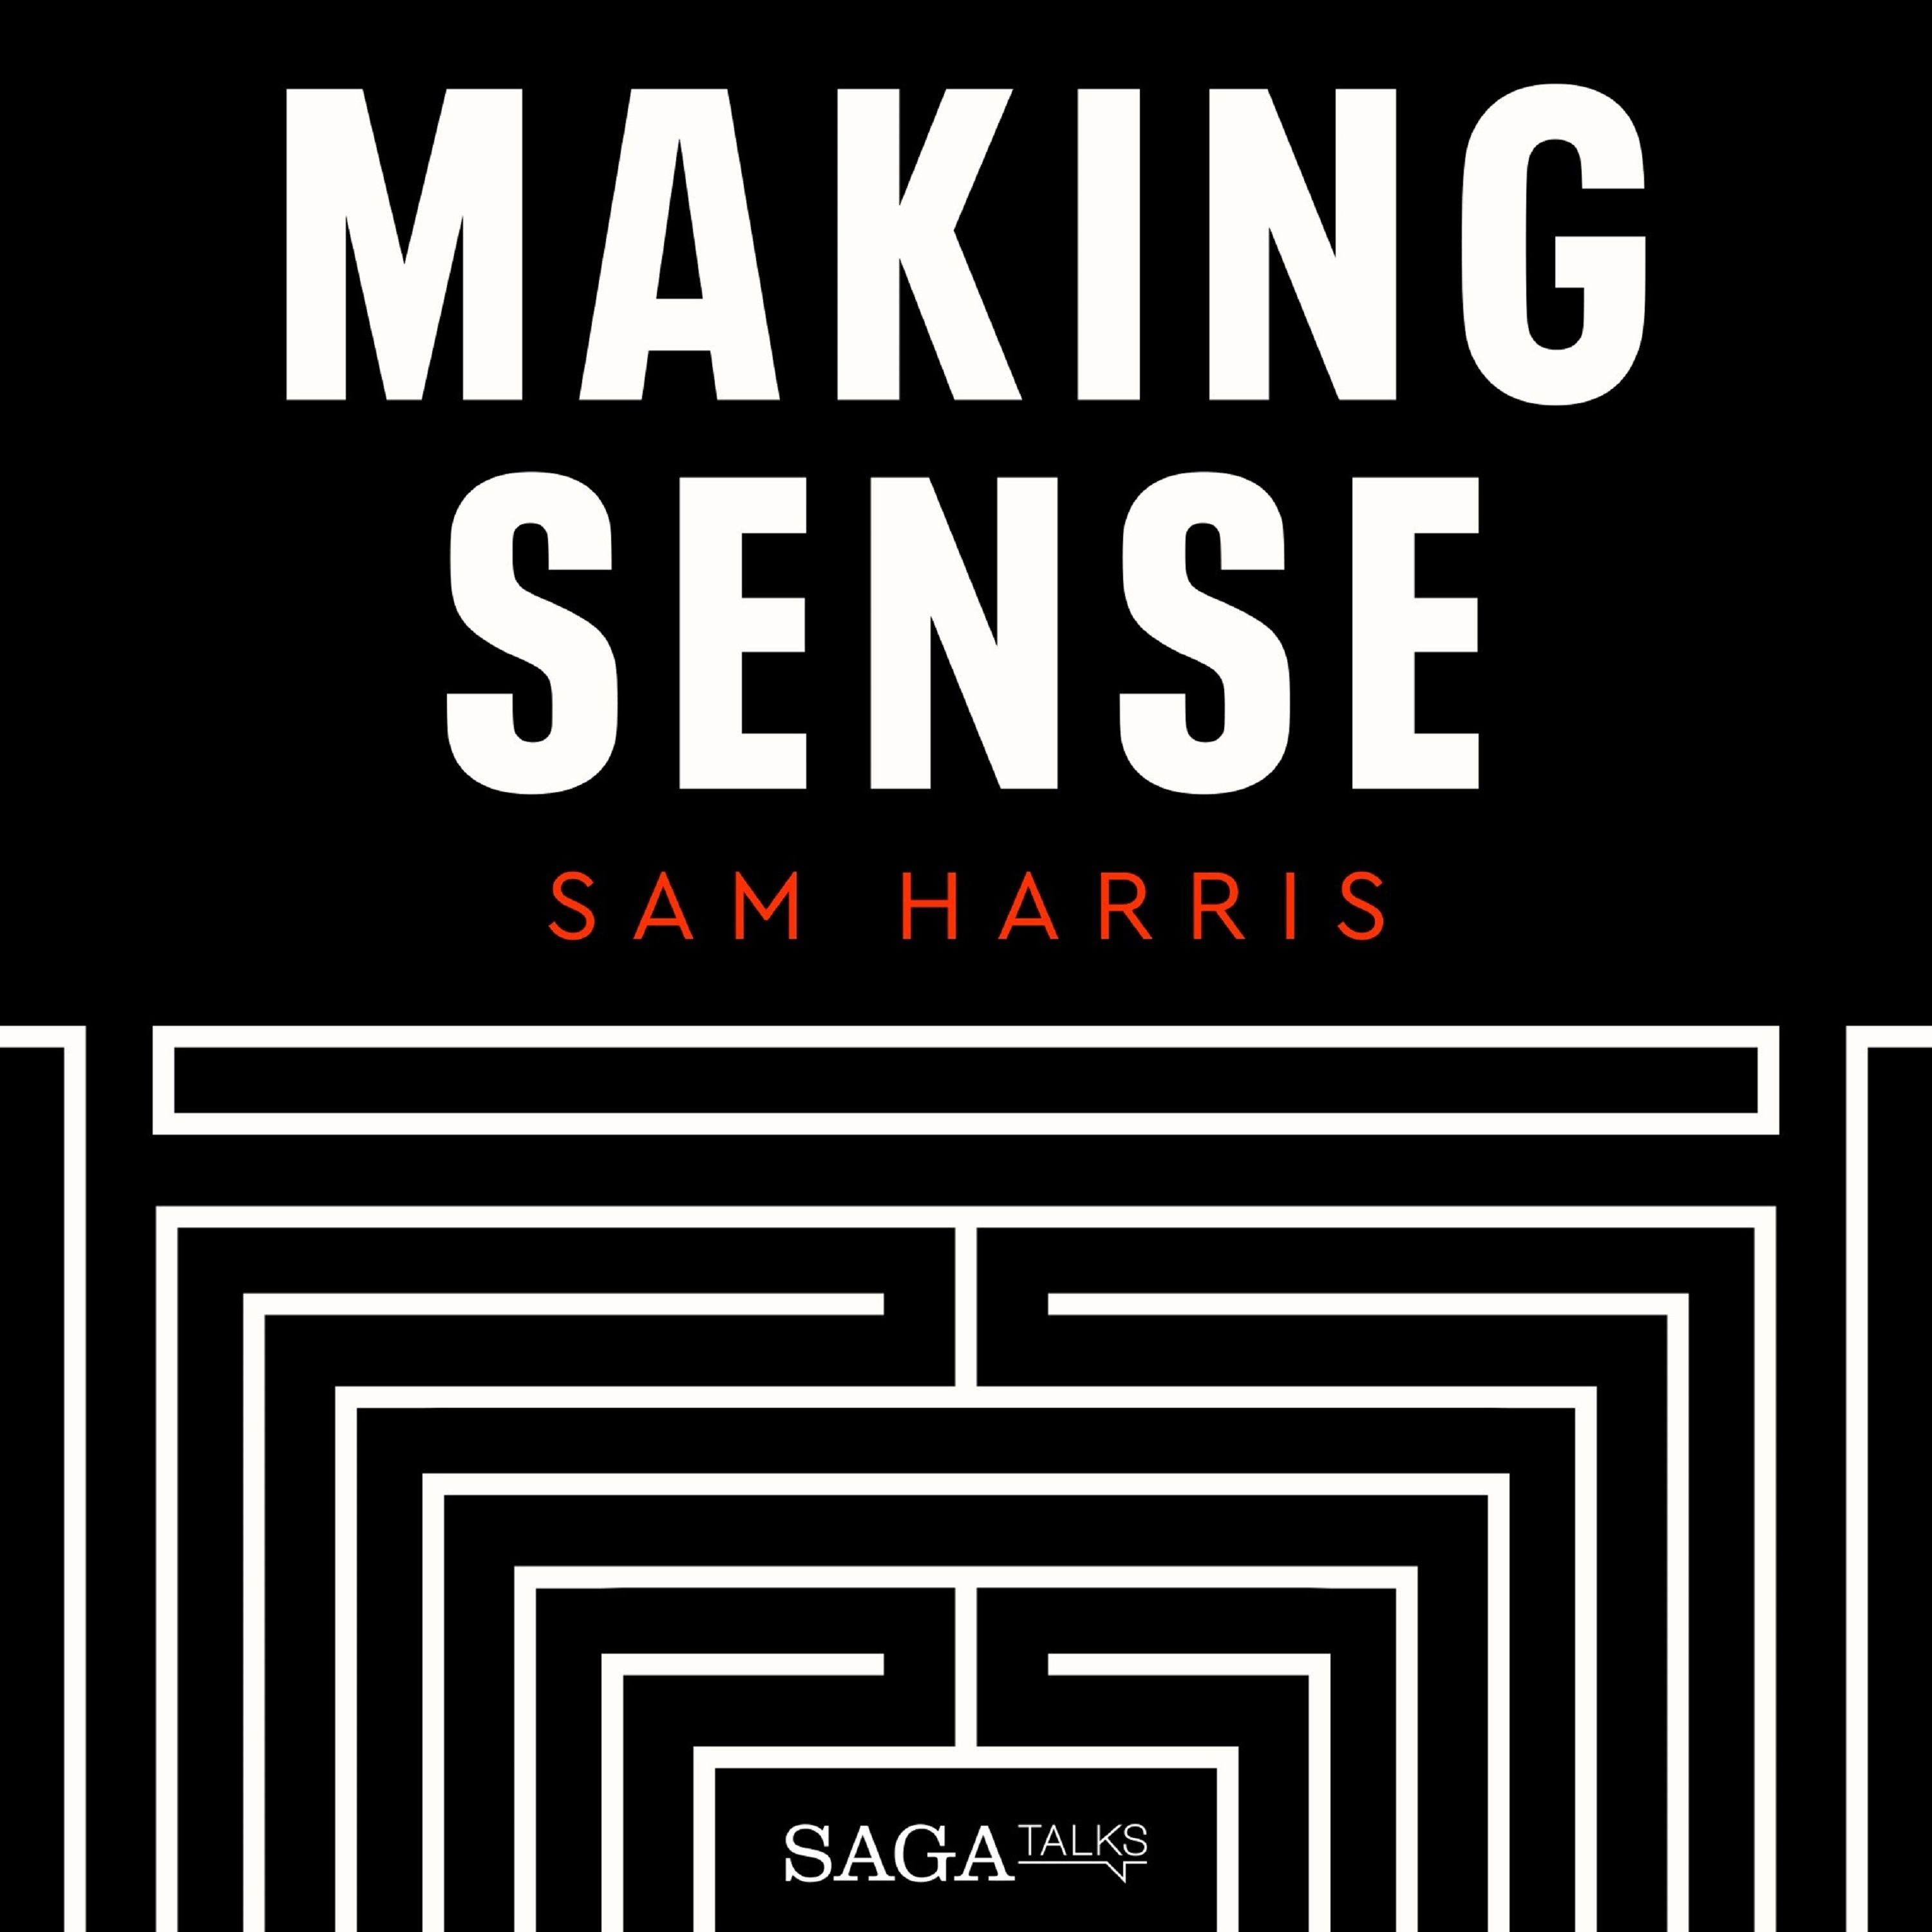 Conversations on New Technologies, ljudbok av Sam Harris